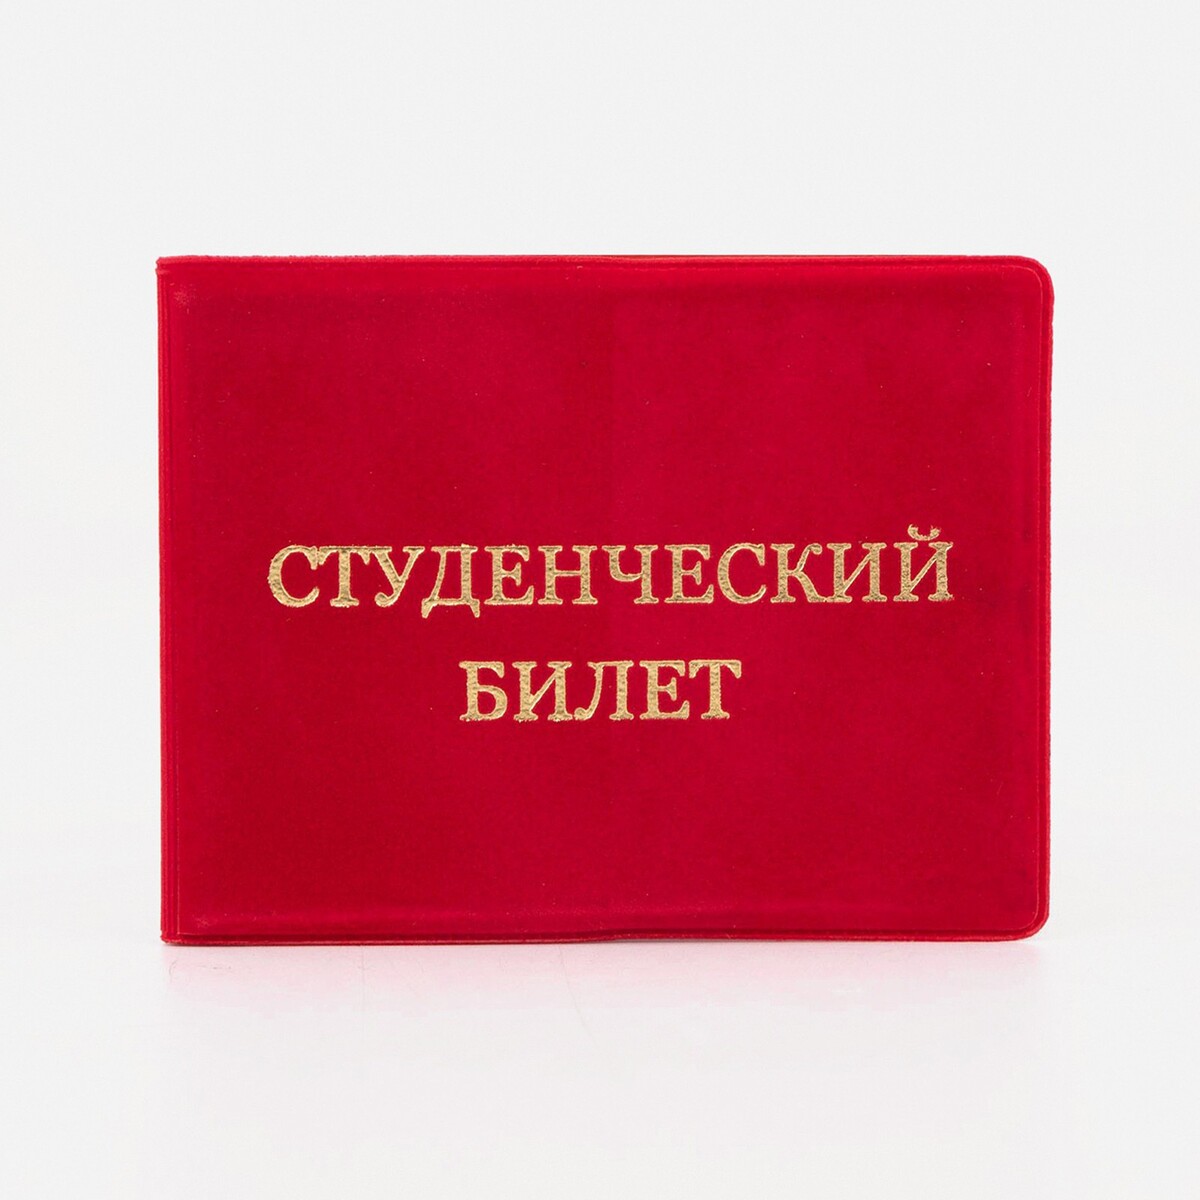 Обложка для студенческого билета, цвет красный обложка для студенческого спб мосты и крепость сб2018 044